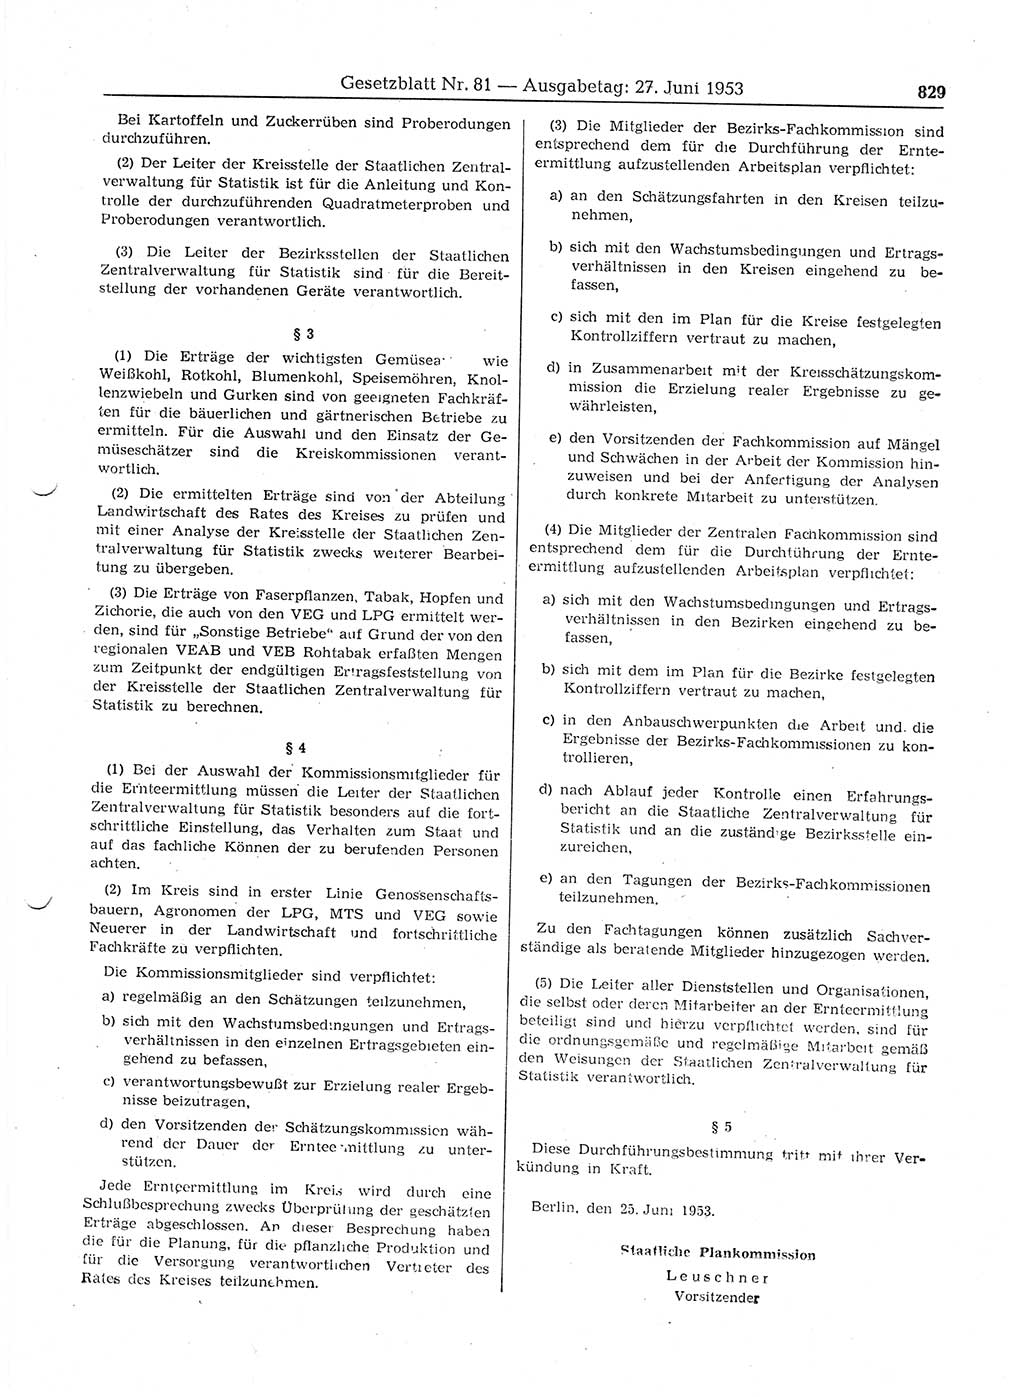 Gesetzblatt (GBl.) der Deutschen Demokratischen Republik (DDR) 1953, Seite 829 (GBl. DDR 1953, S. 829)